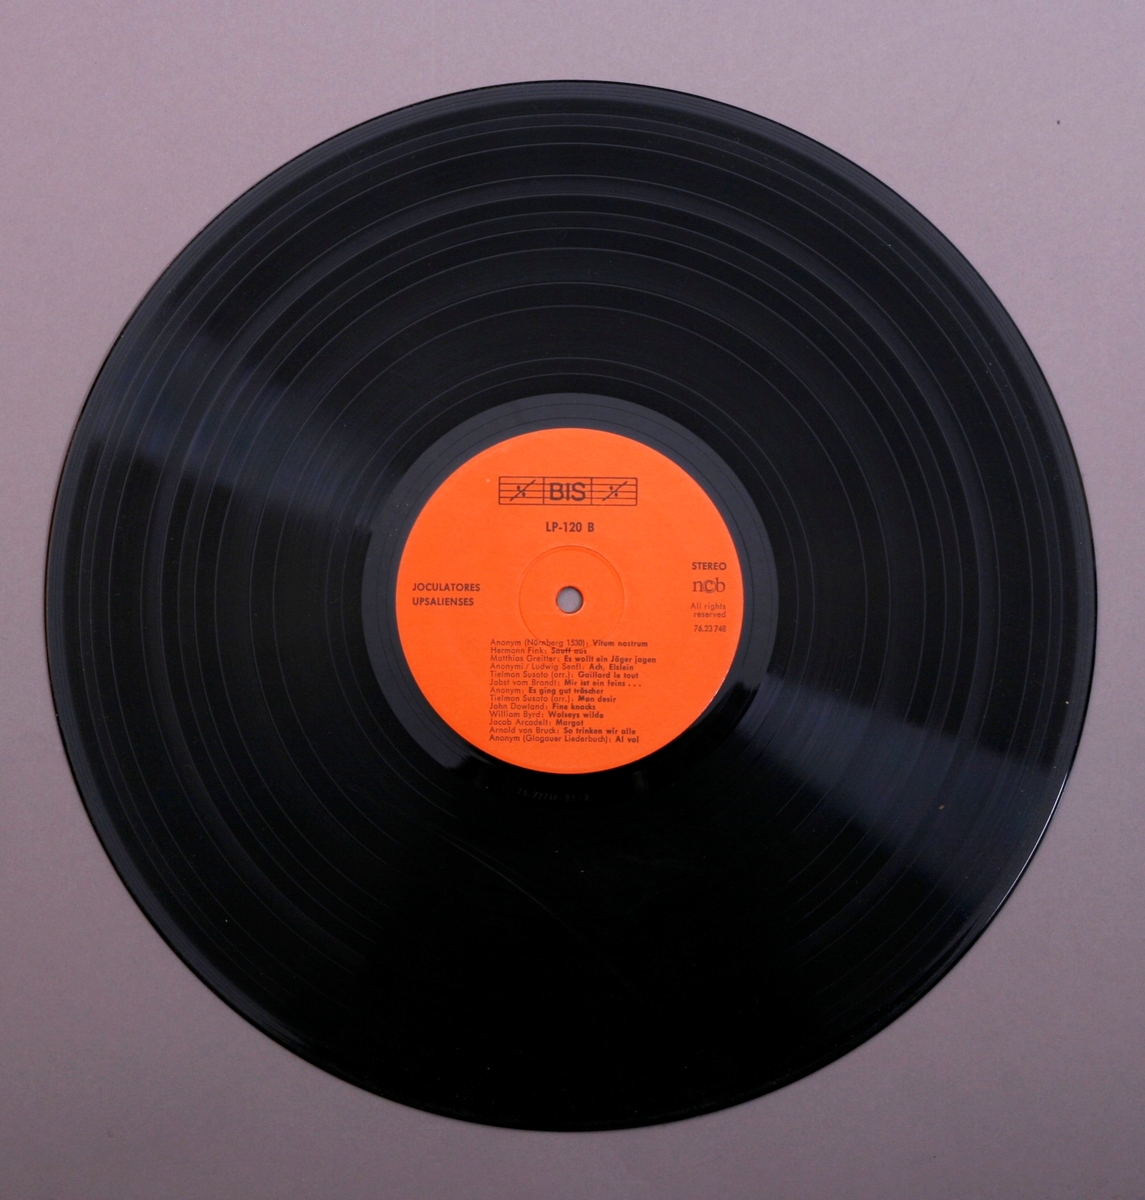 Grammofonplate i svart vinyl. Dobbelt plateomslag med hefte. Plata ligger i en papirlomme.